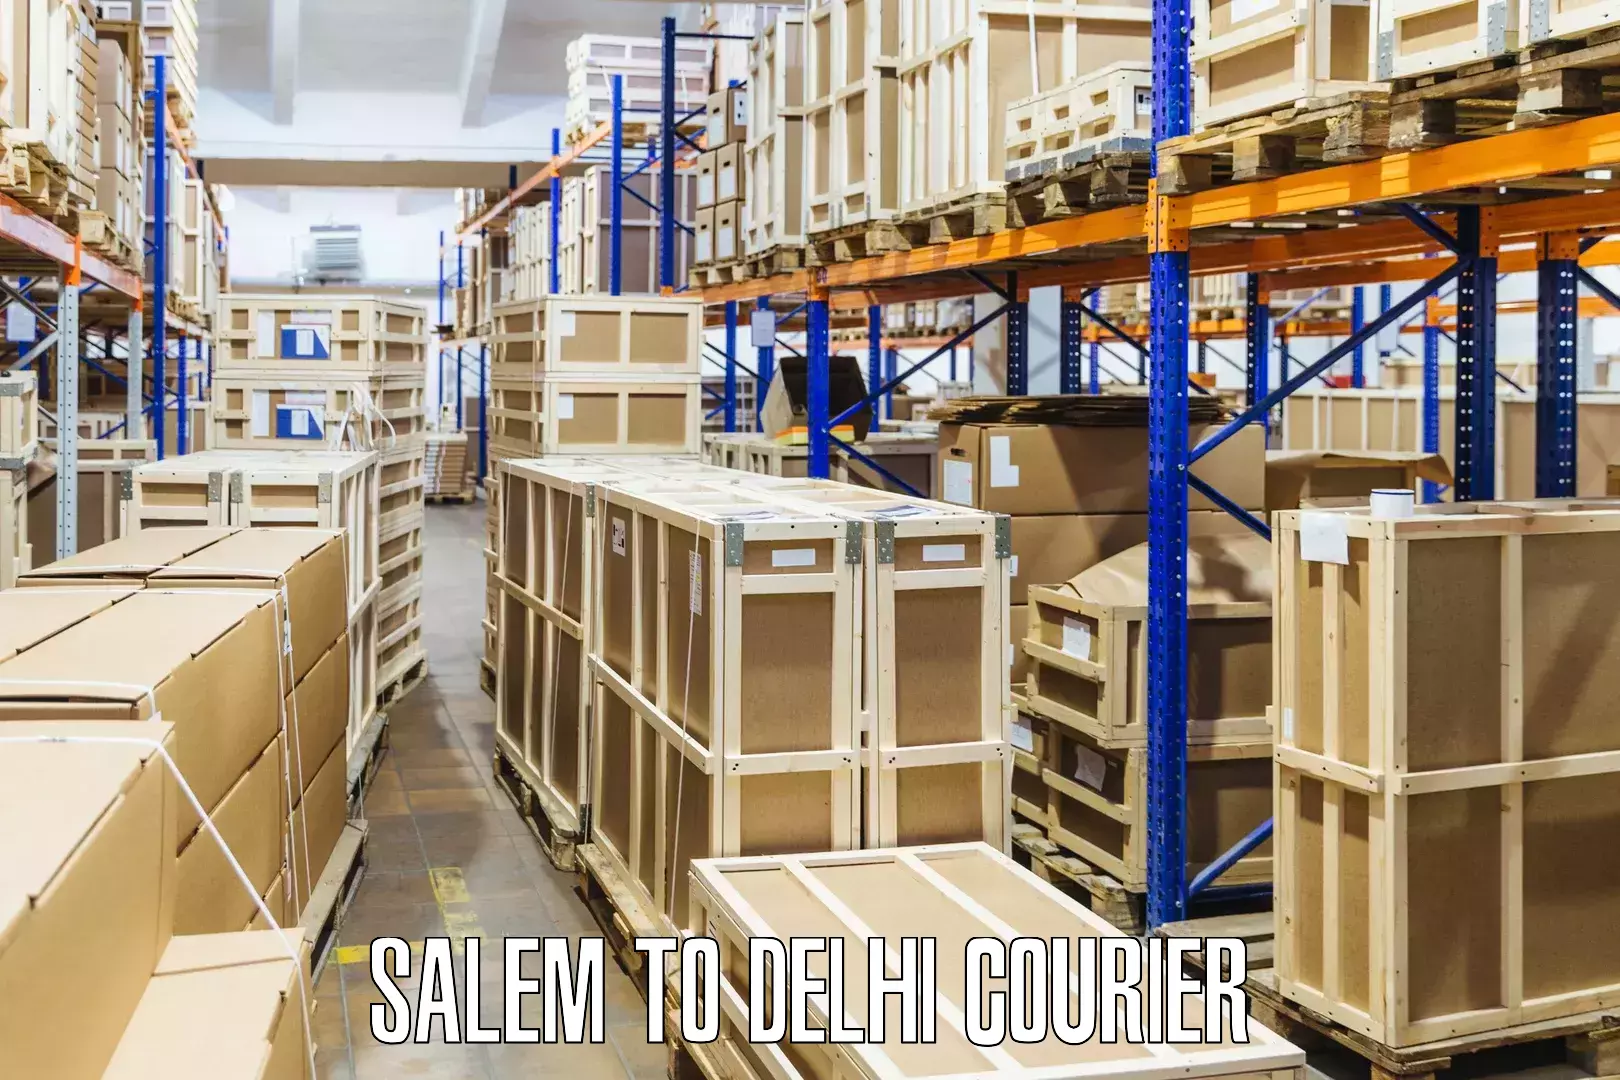 Door-to-door freight service Salem to NCR